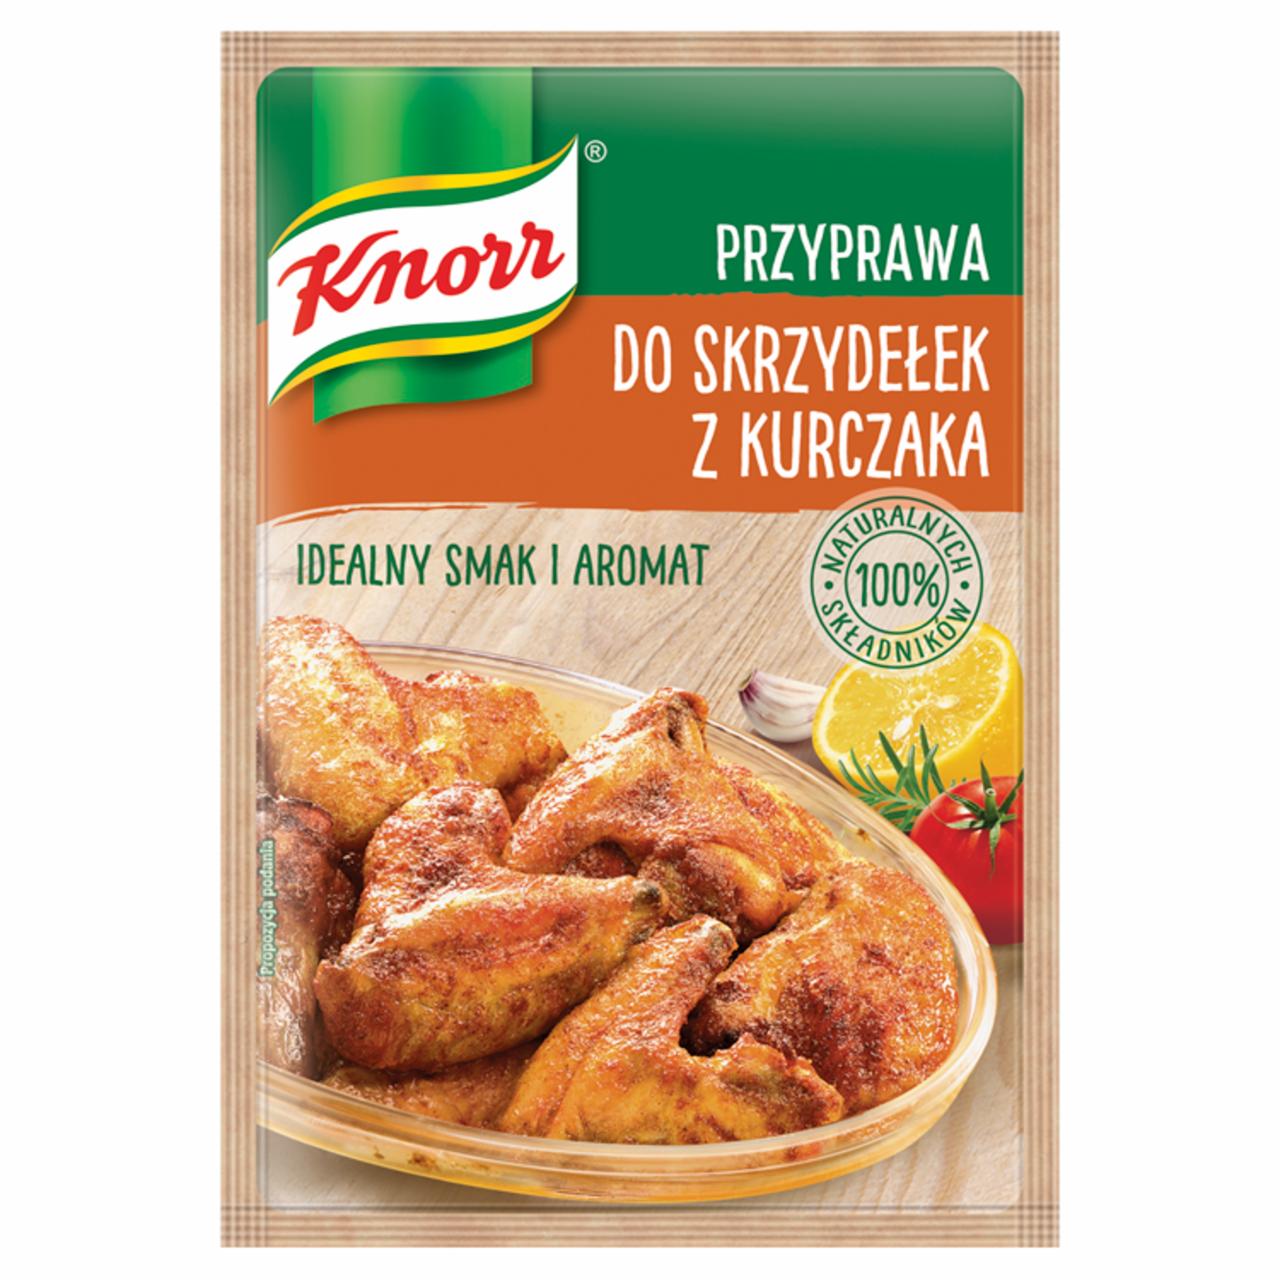 Zdjęcia - Knorr Przyprawa do skrzydełek z kurczaka 23 g